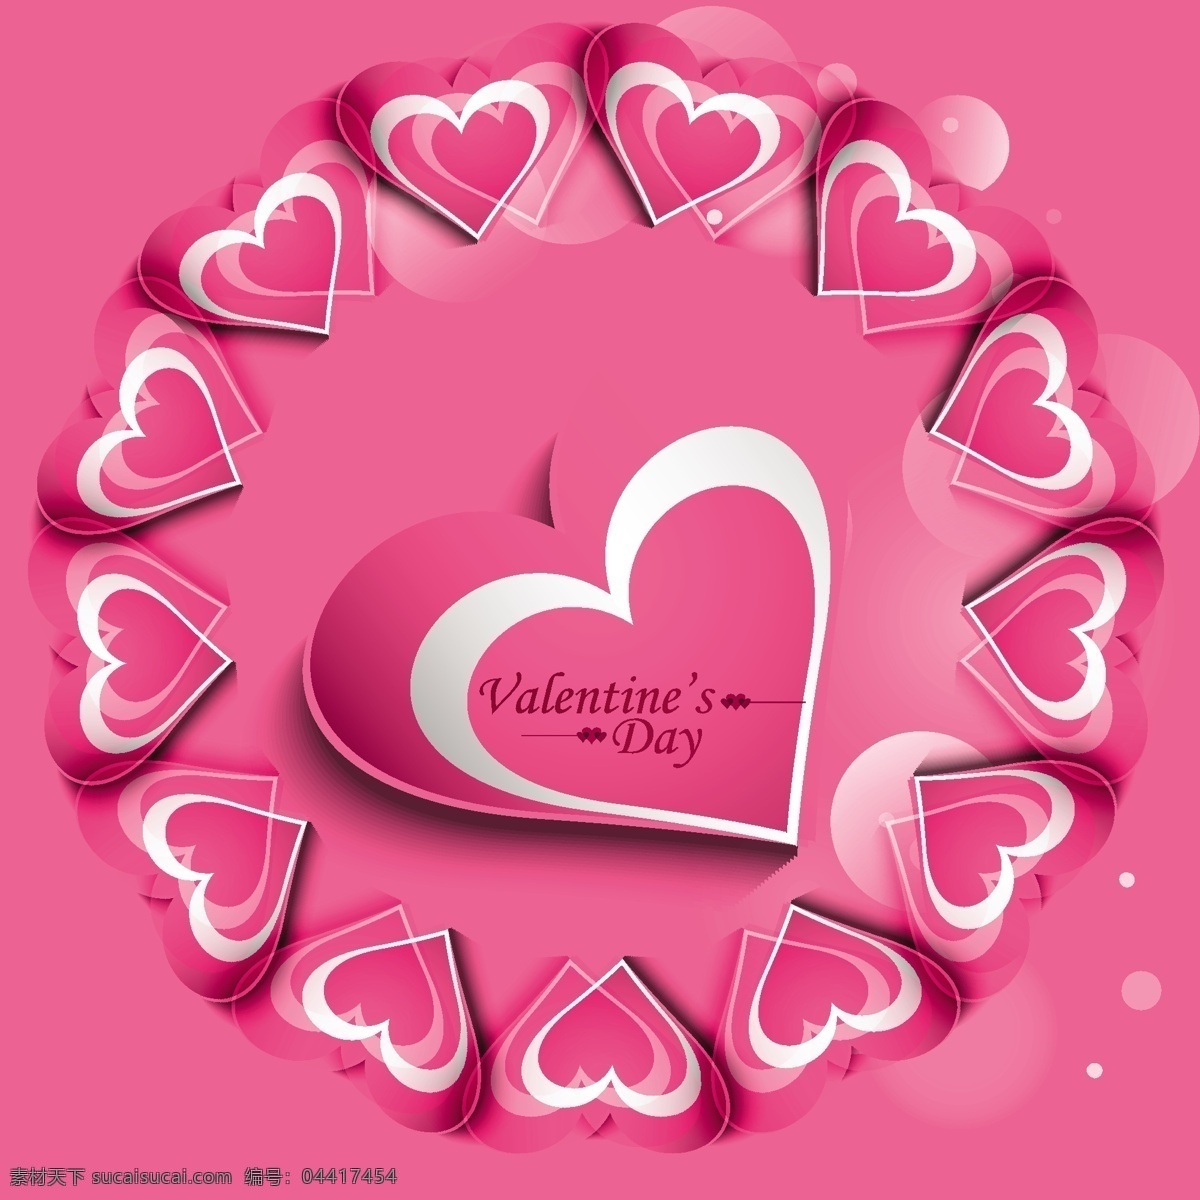 闪亮 爱情 背景 粉红色 心 抽象的爱 卡 模板 情人节 粉色 壁纸 庆祝 情侣 情人节的心 粉红色的背景 浪漫 爱的背景 问候